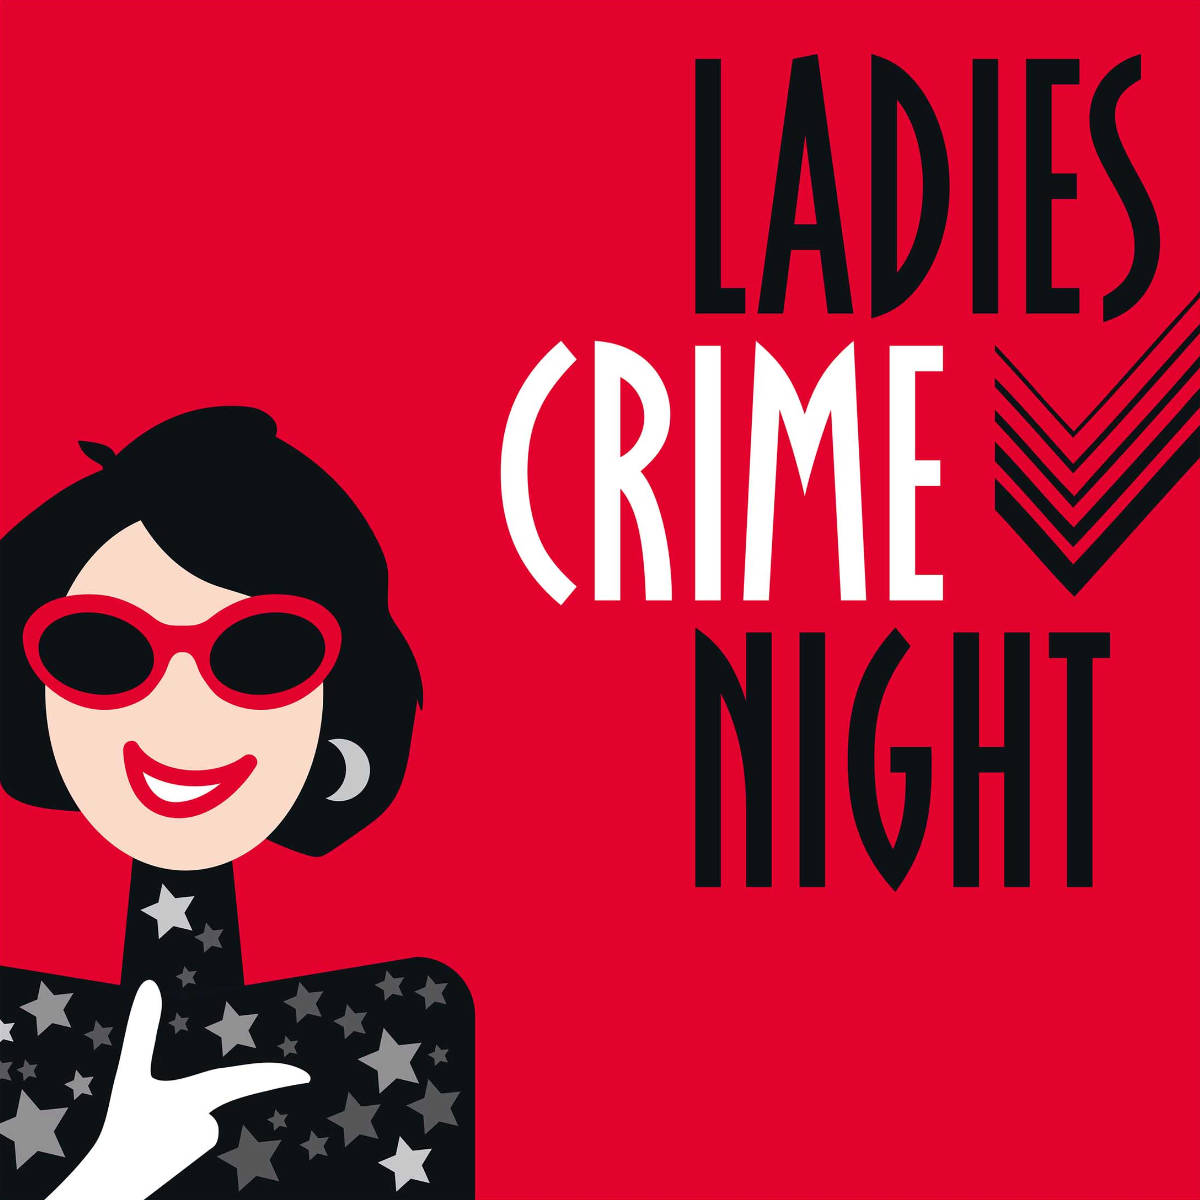 Bild von der Veranstaltung Die Ladies Crime Night in der Bibliothek Weissach